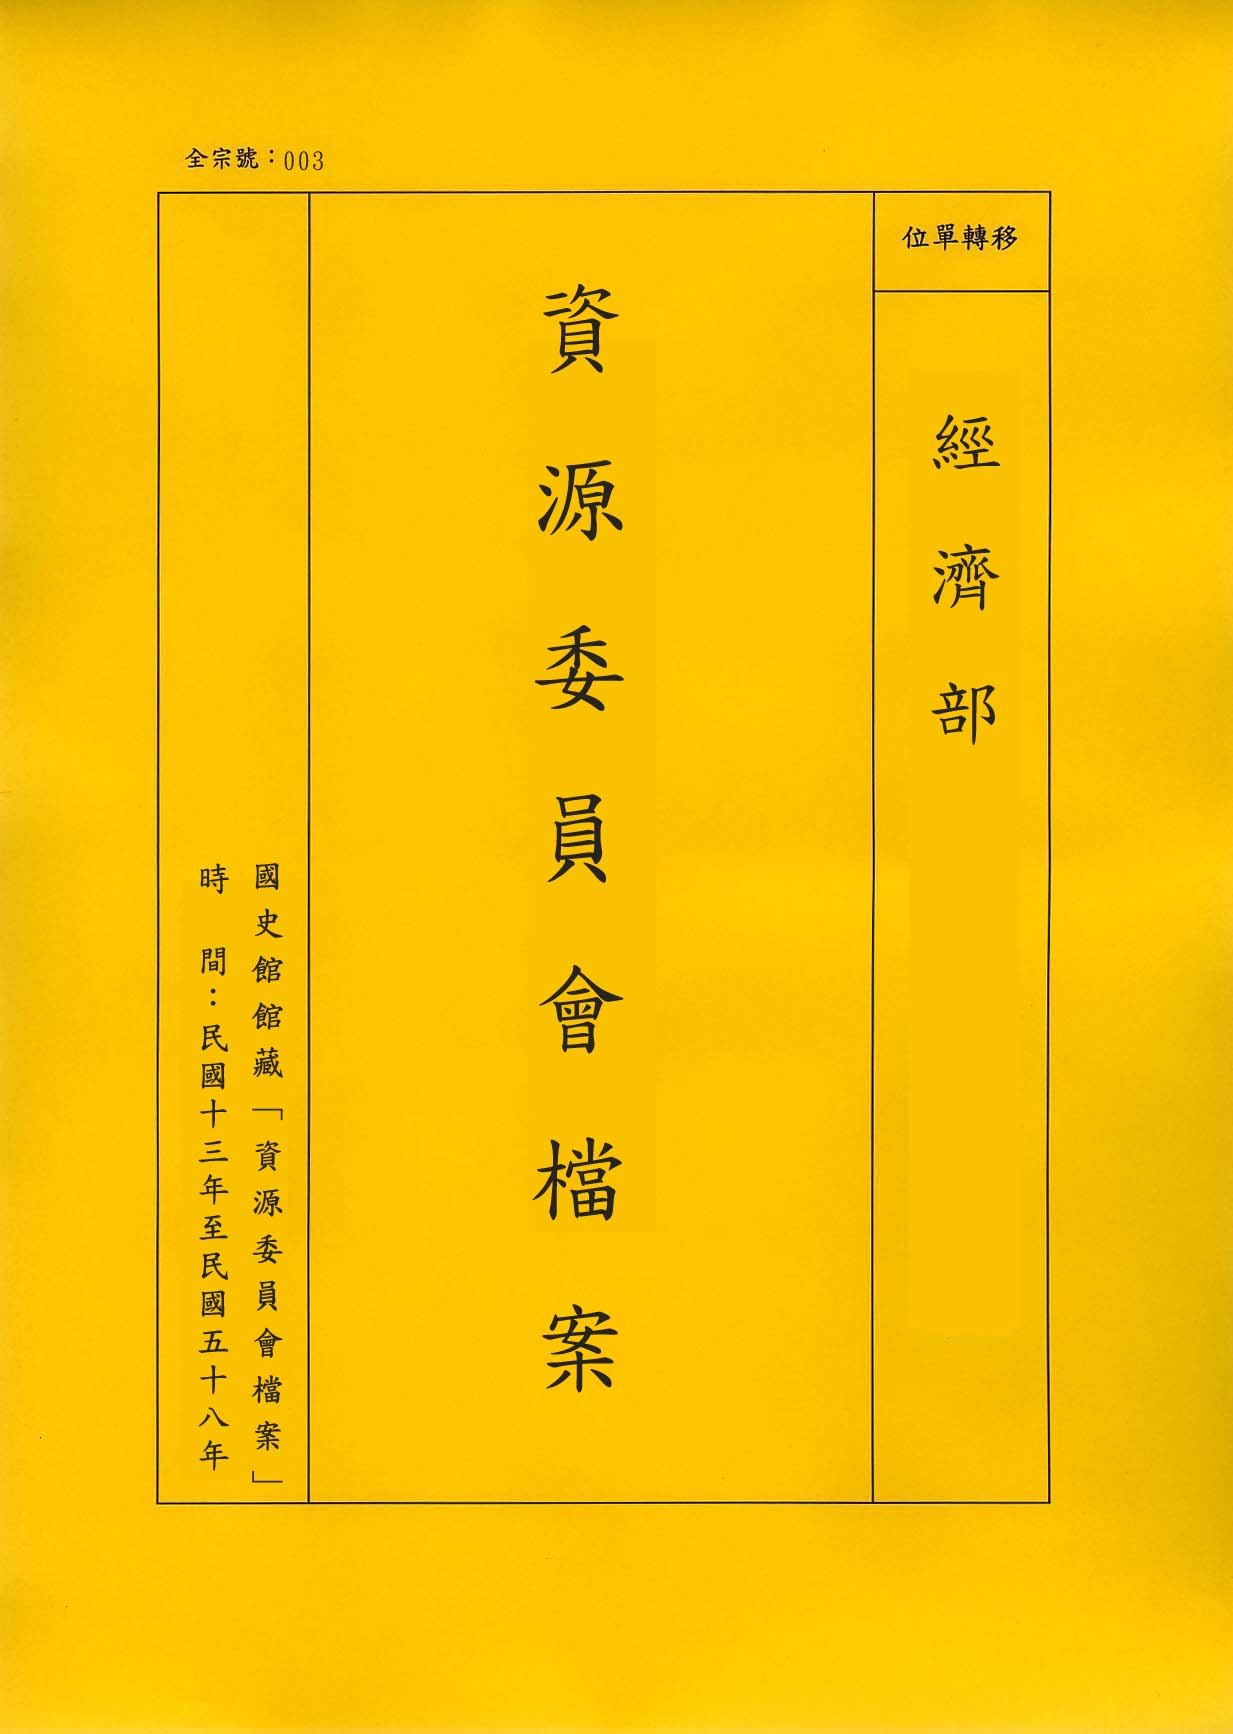 卷名:手帕工廠調查表─上海(003-010306-0170)